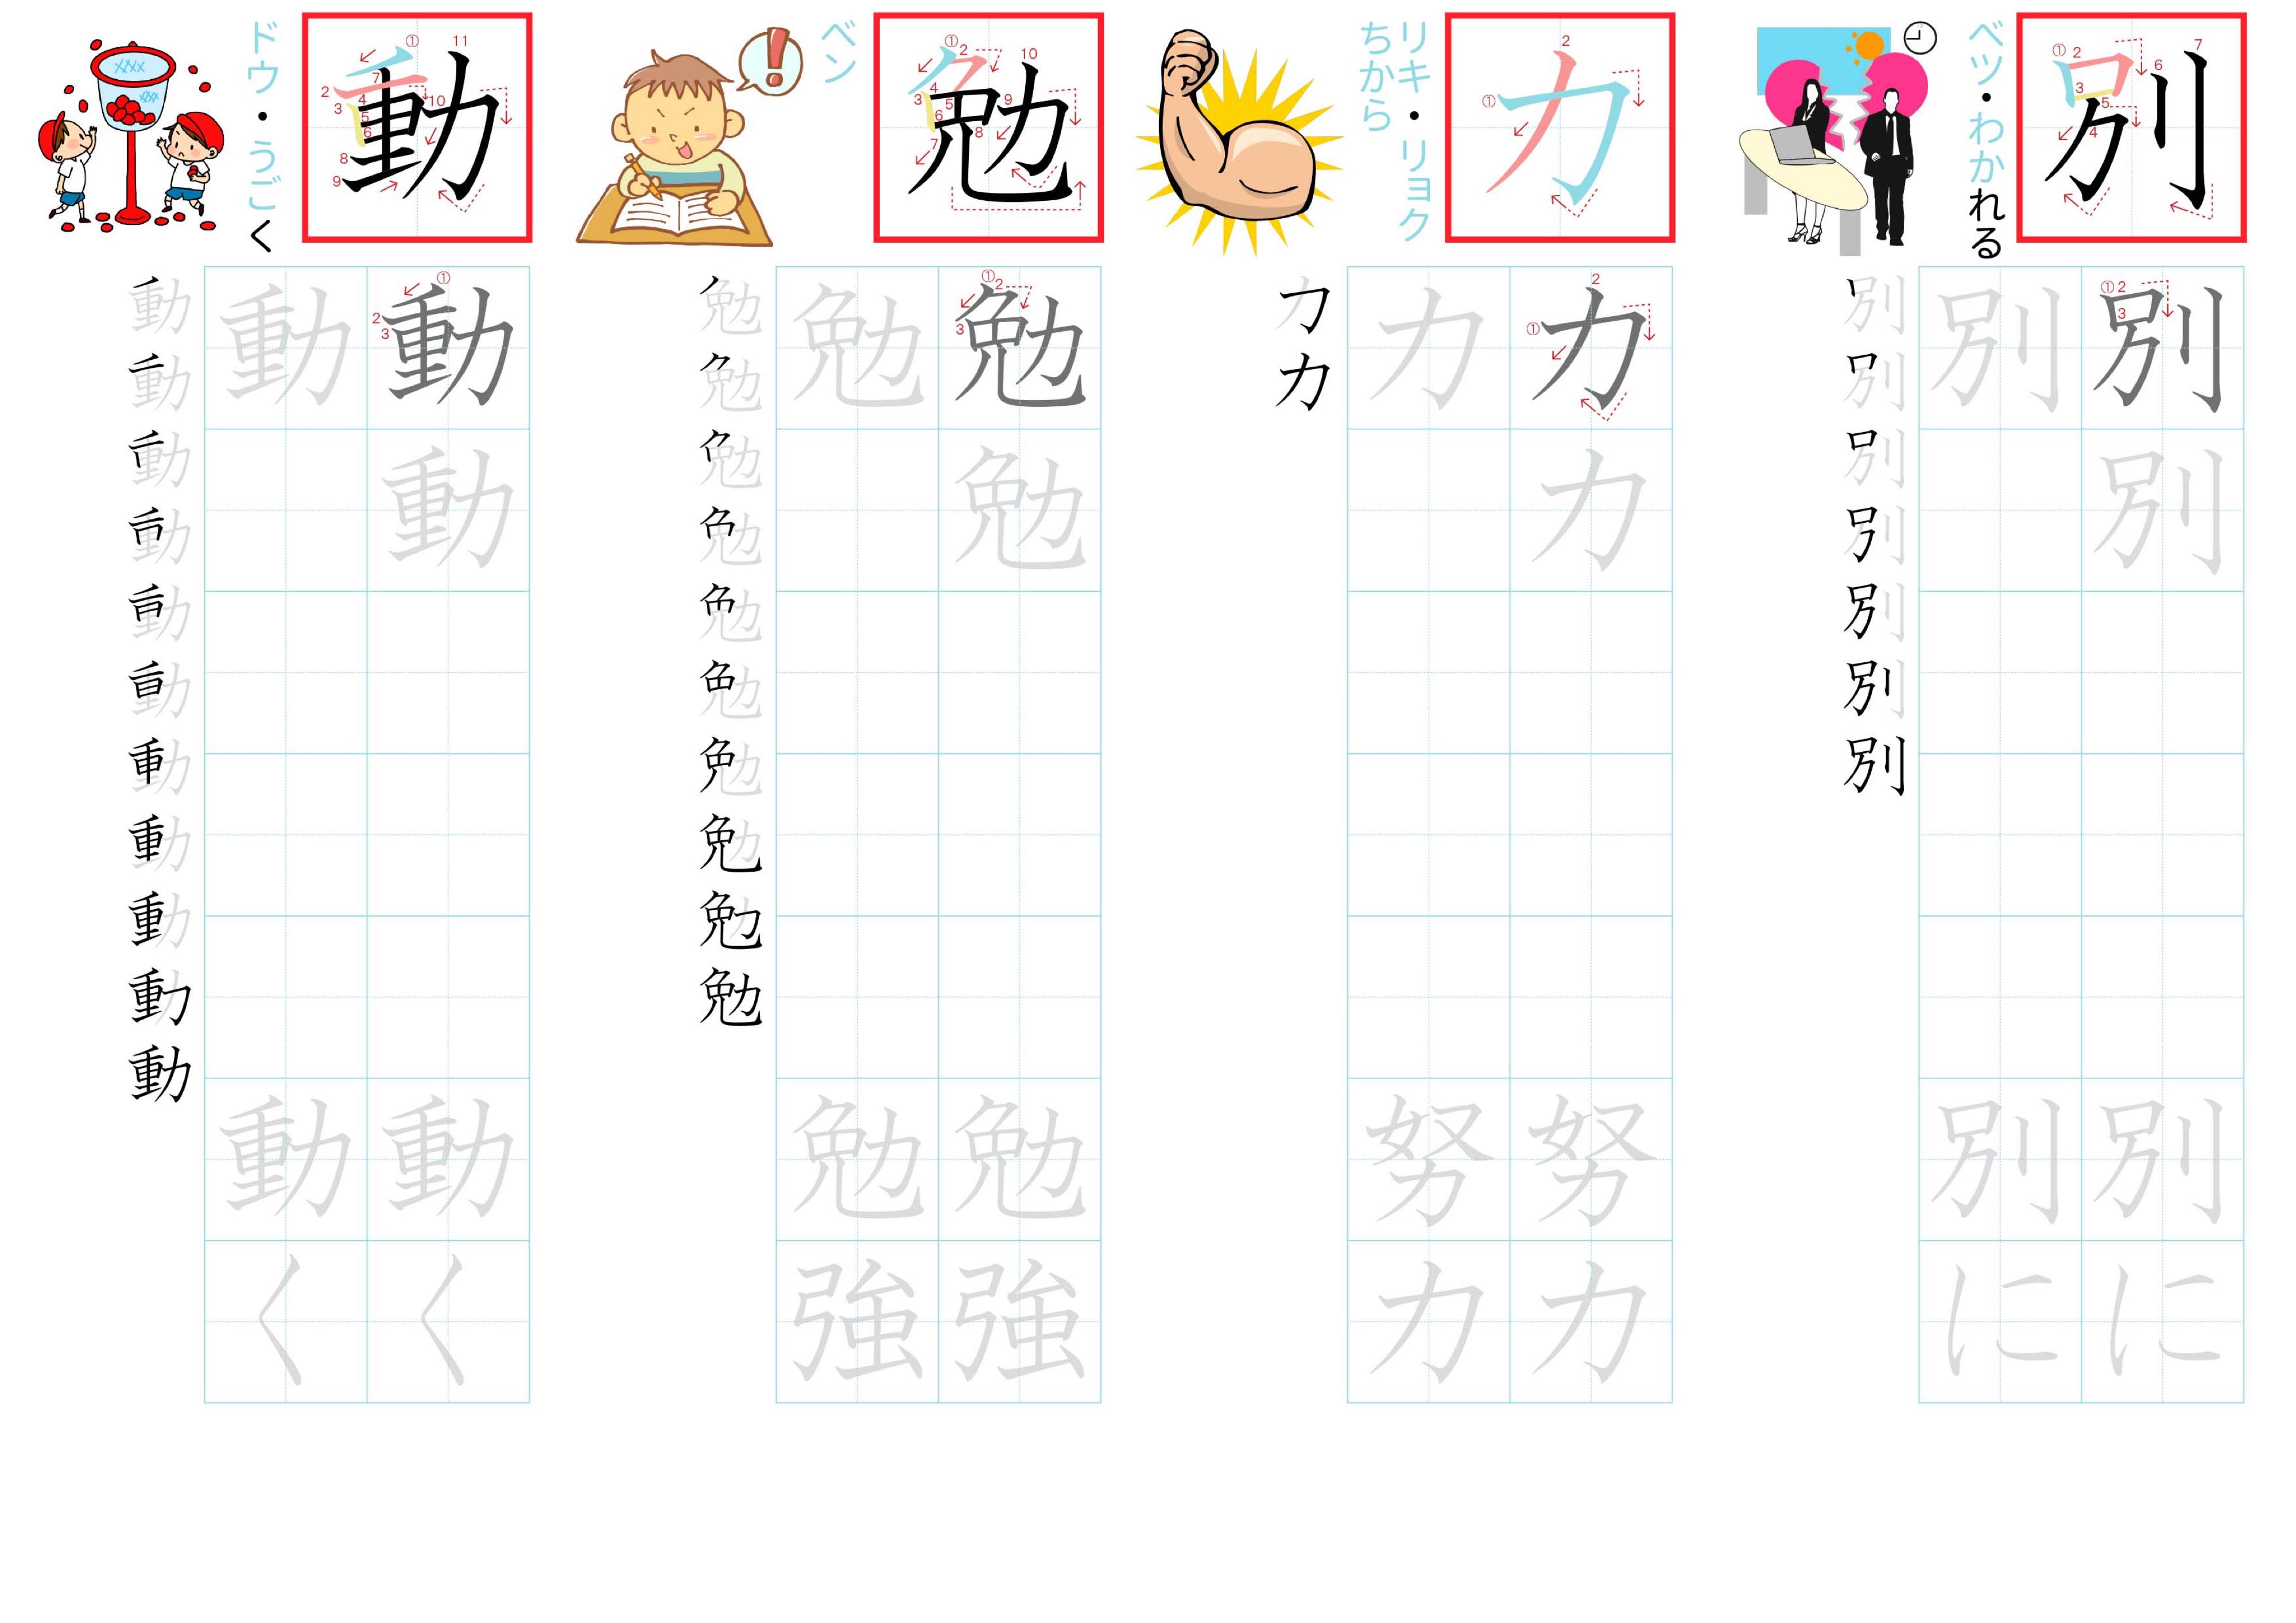 kanji-practice-card-n4-japanese-026